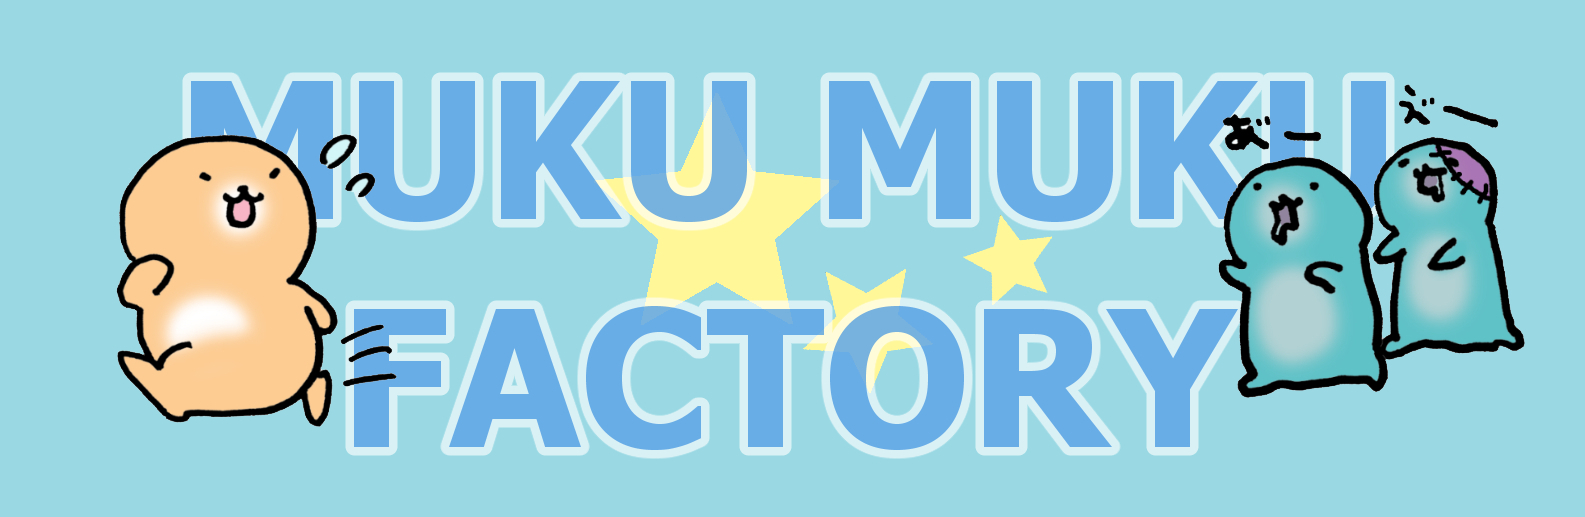 muku2factory